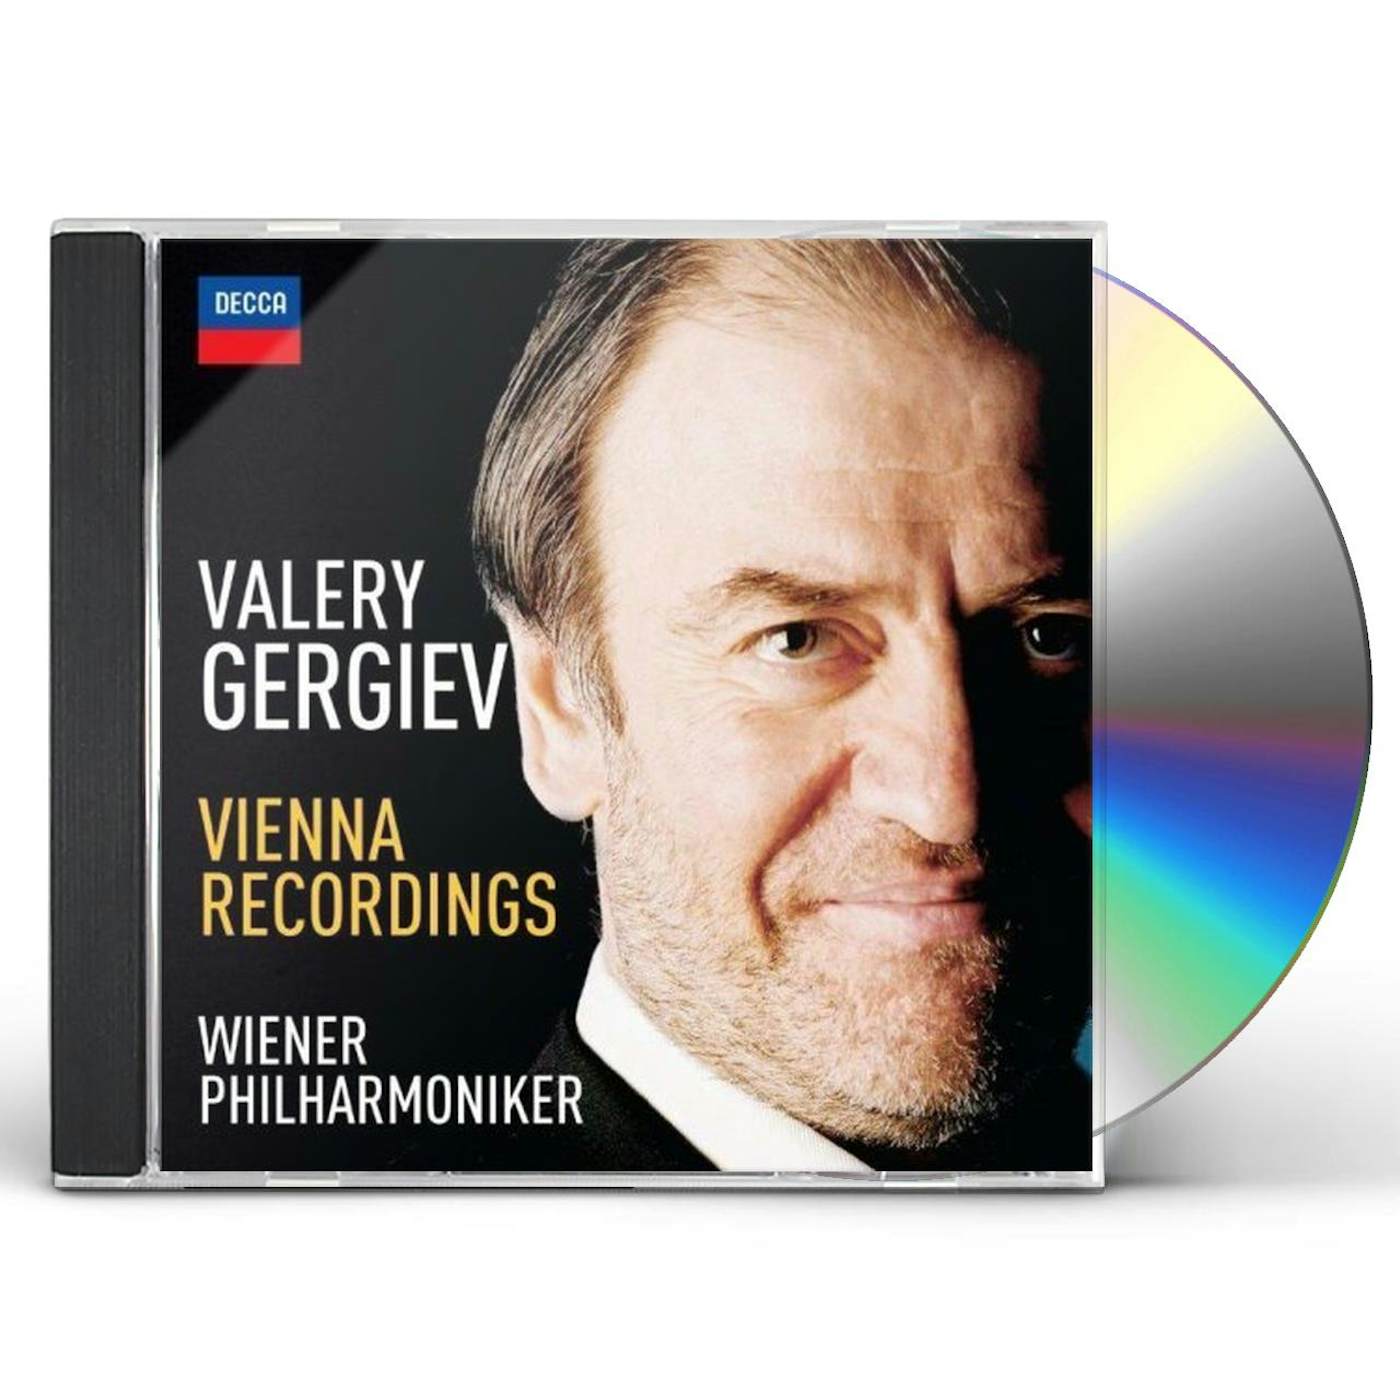 Valery Gergiev VIENNA RECORDINGS CD